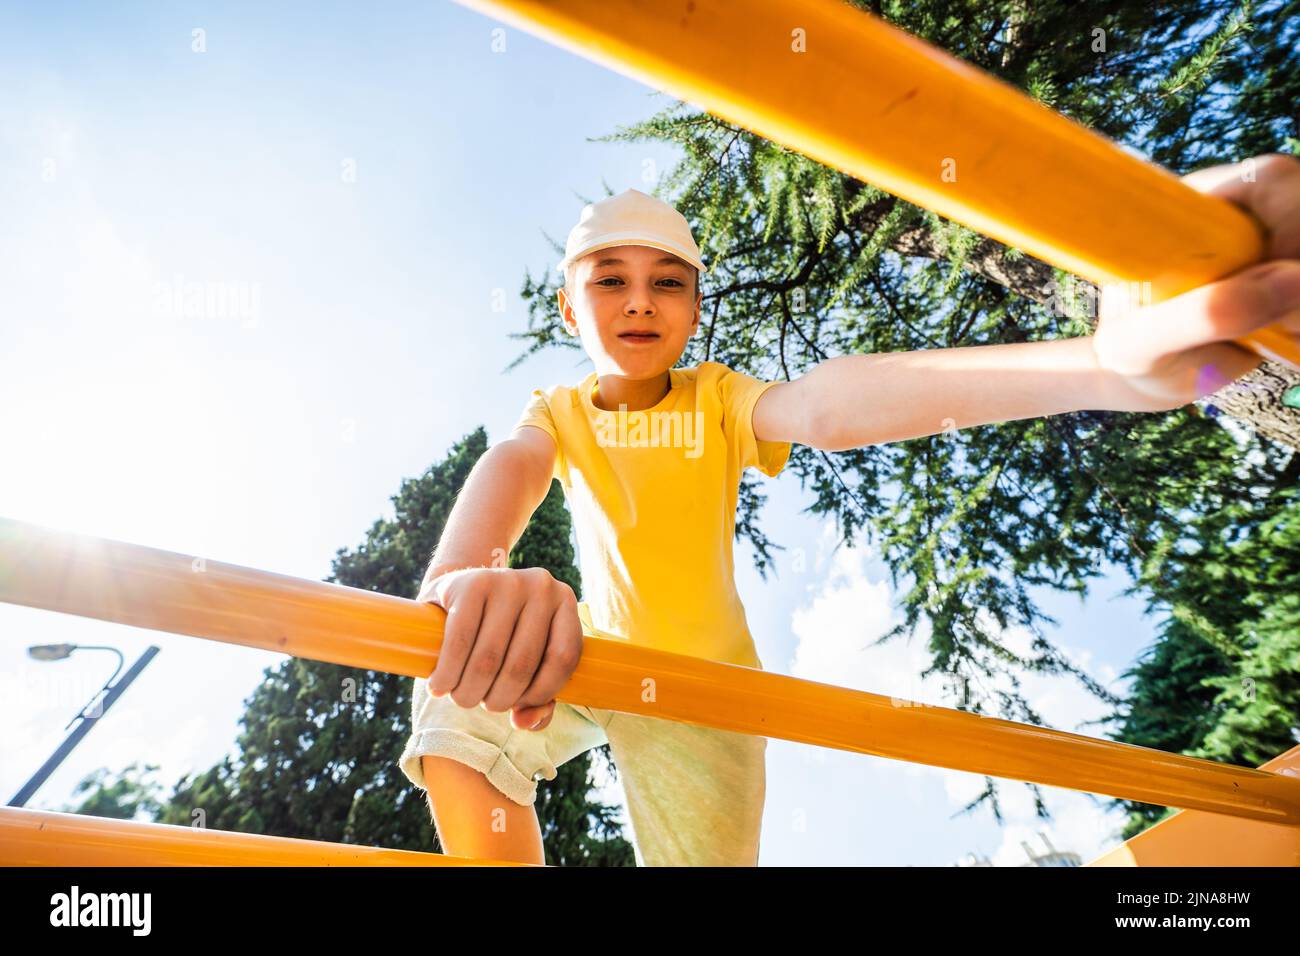 Niño sonriente en el parque de juegos en un día soleado Foto de stock